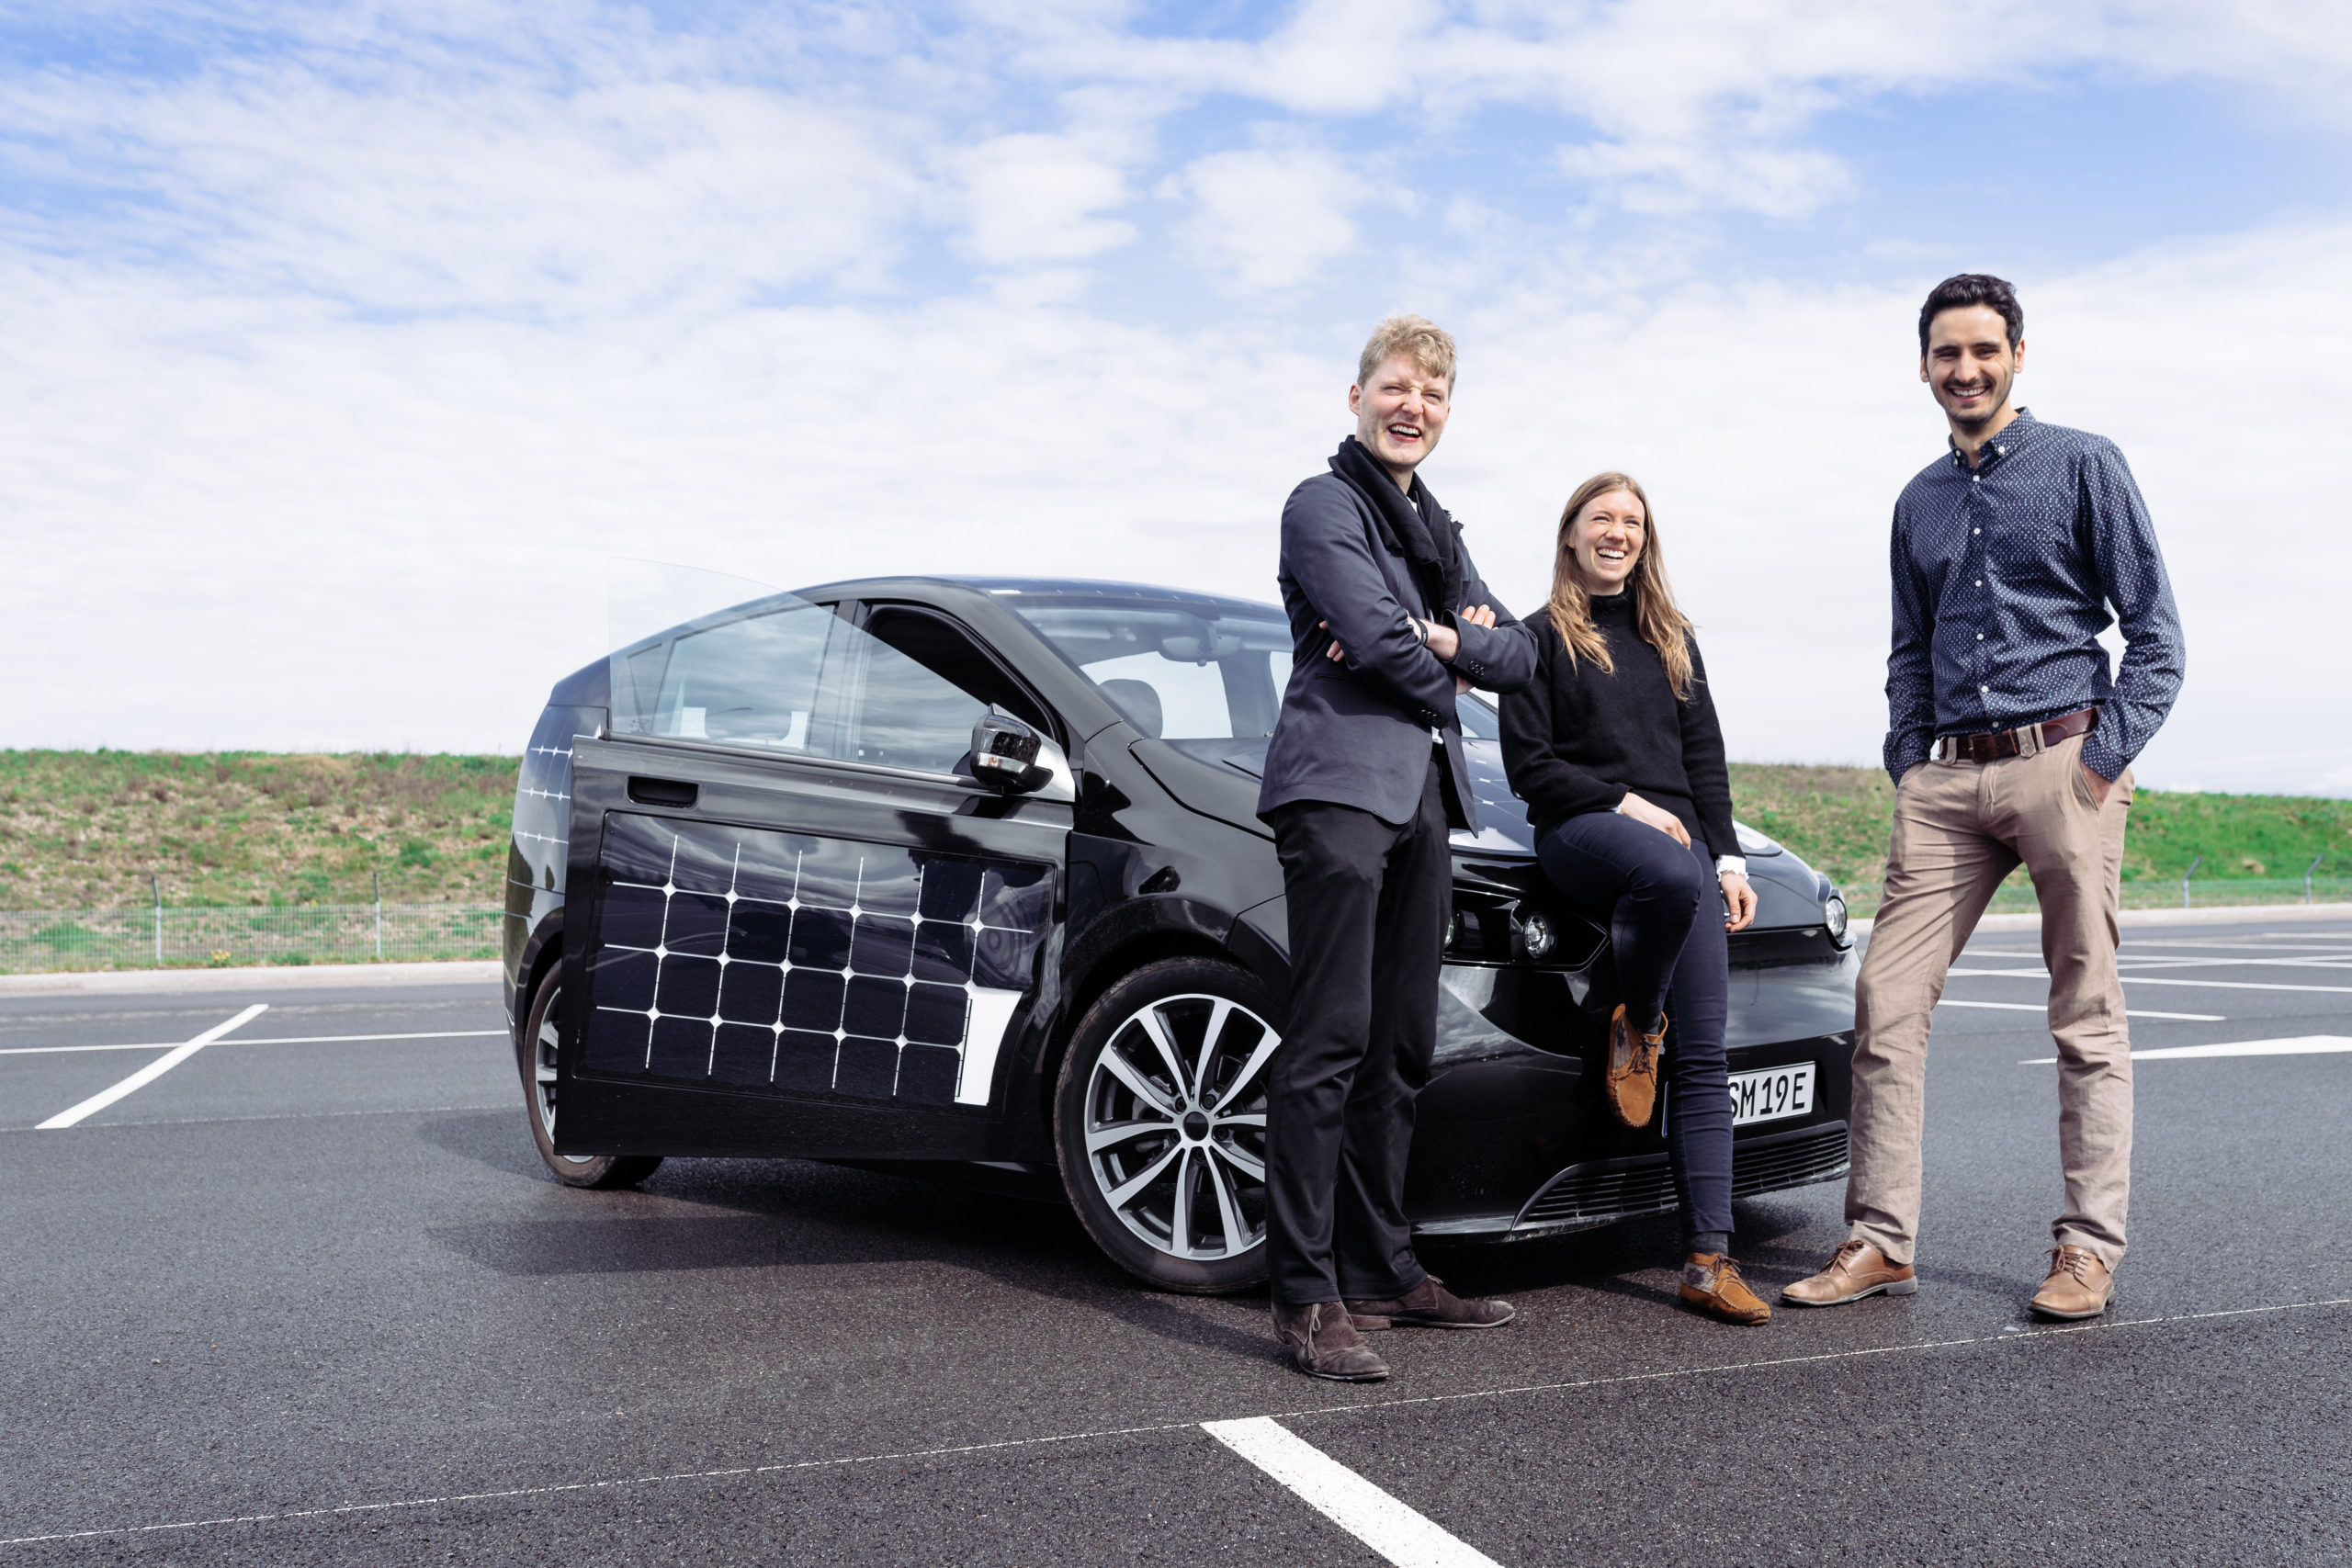 Das deutsche Solar-Auto entkräftet das Hauptargument der Elektro-Gegner